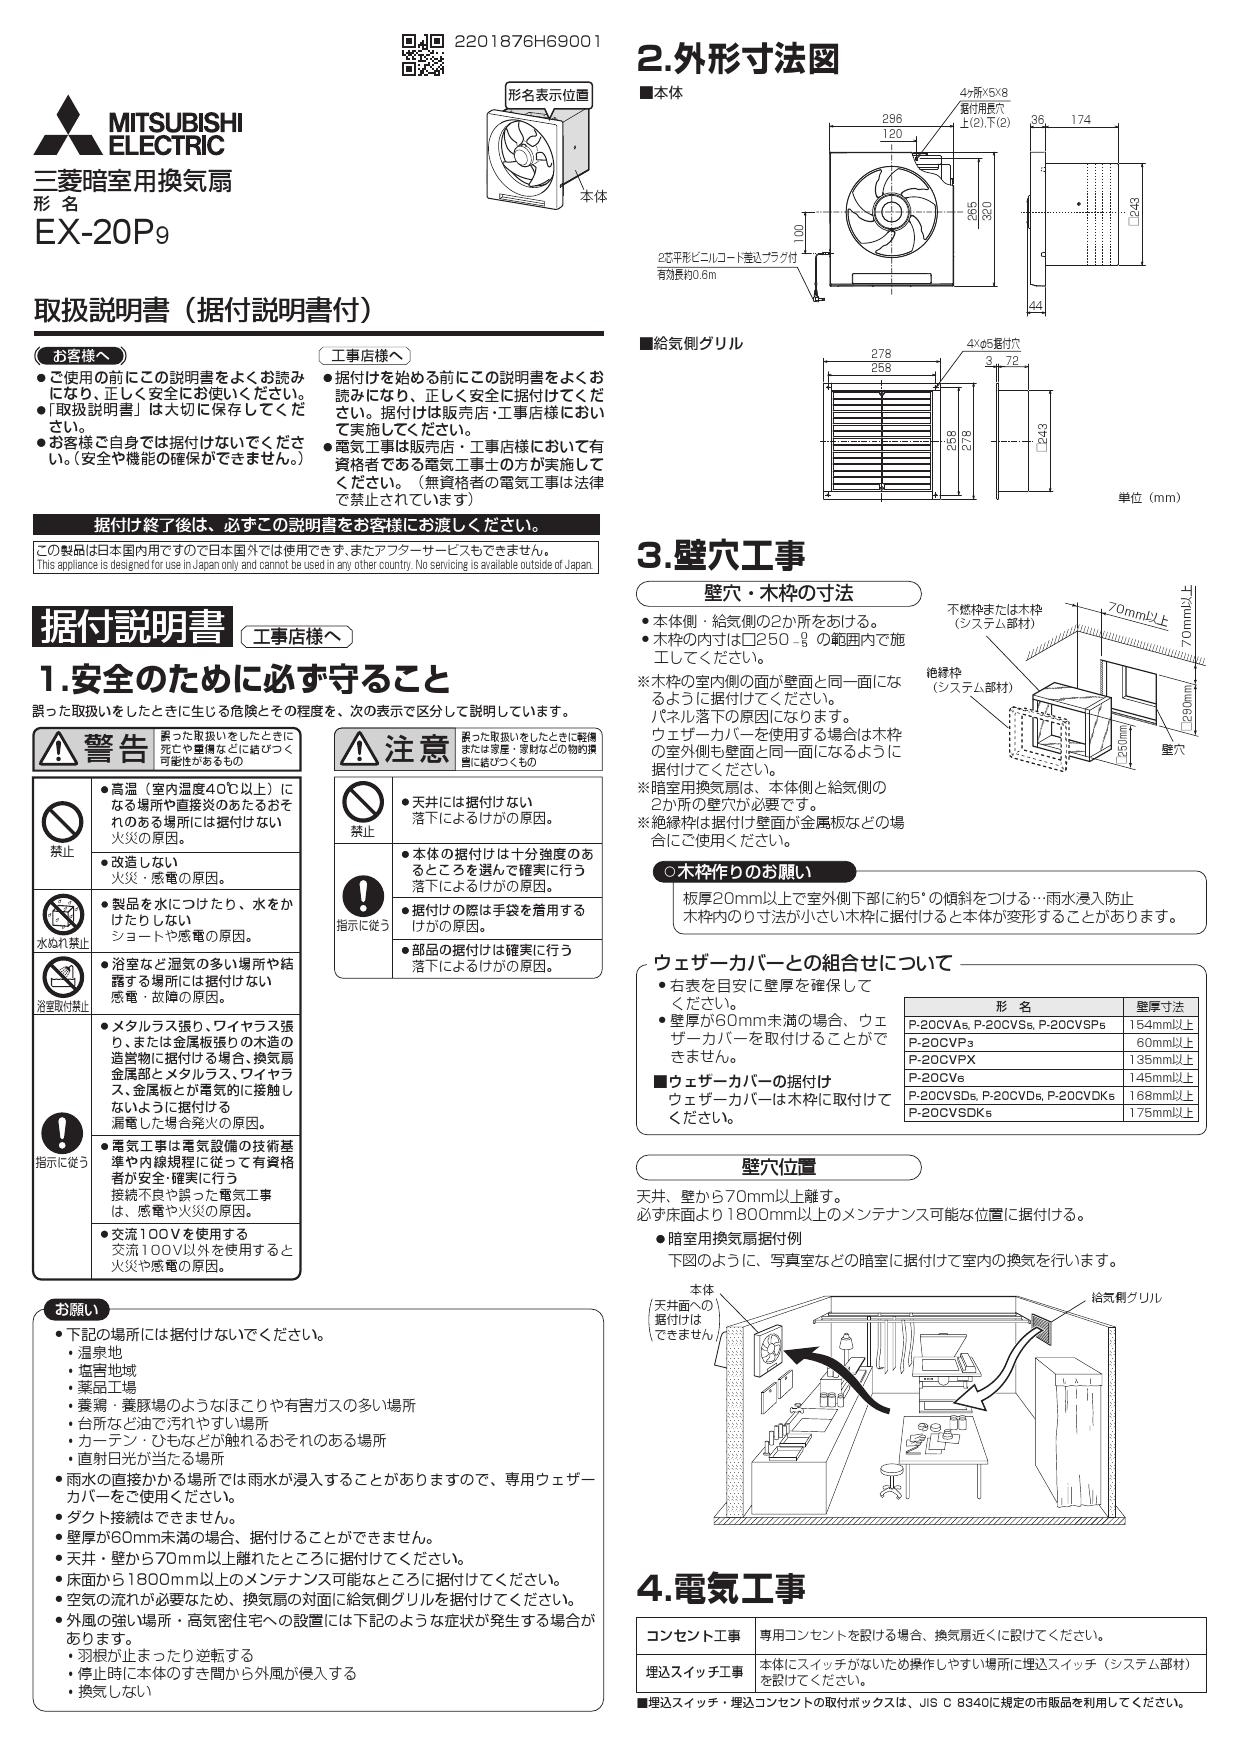 スーパーセール】 三菱電機 MITSUBISHI ELECTRIC 暗室用換気扇 EX-20P9